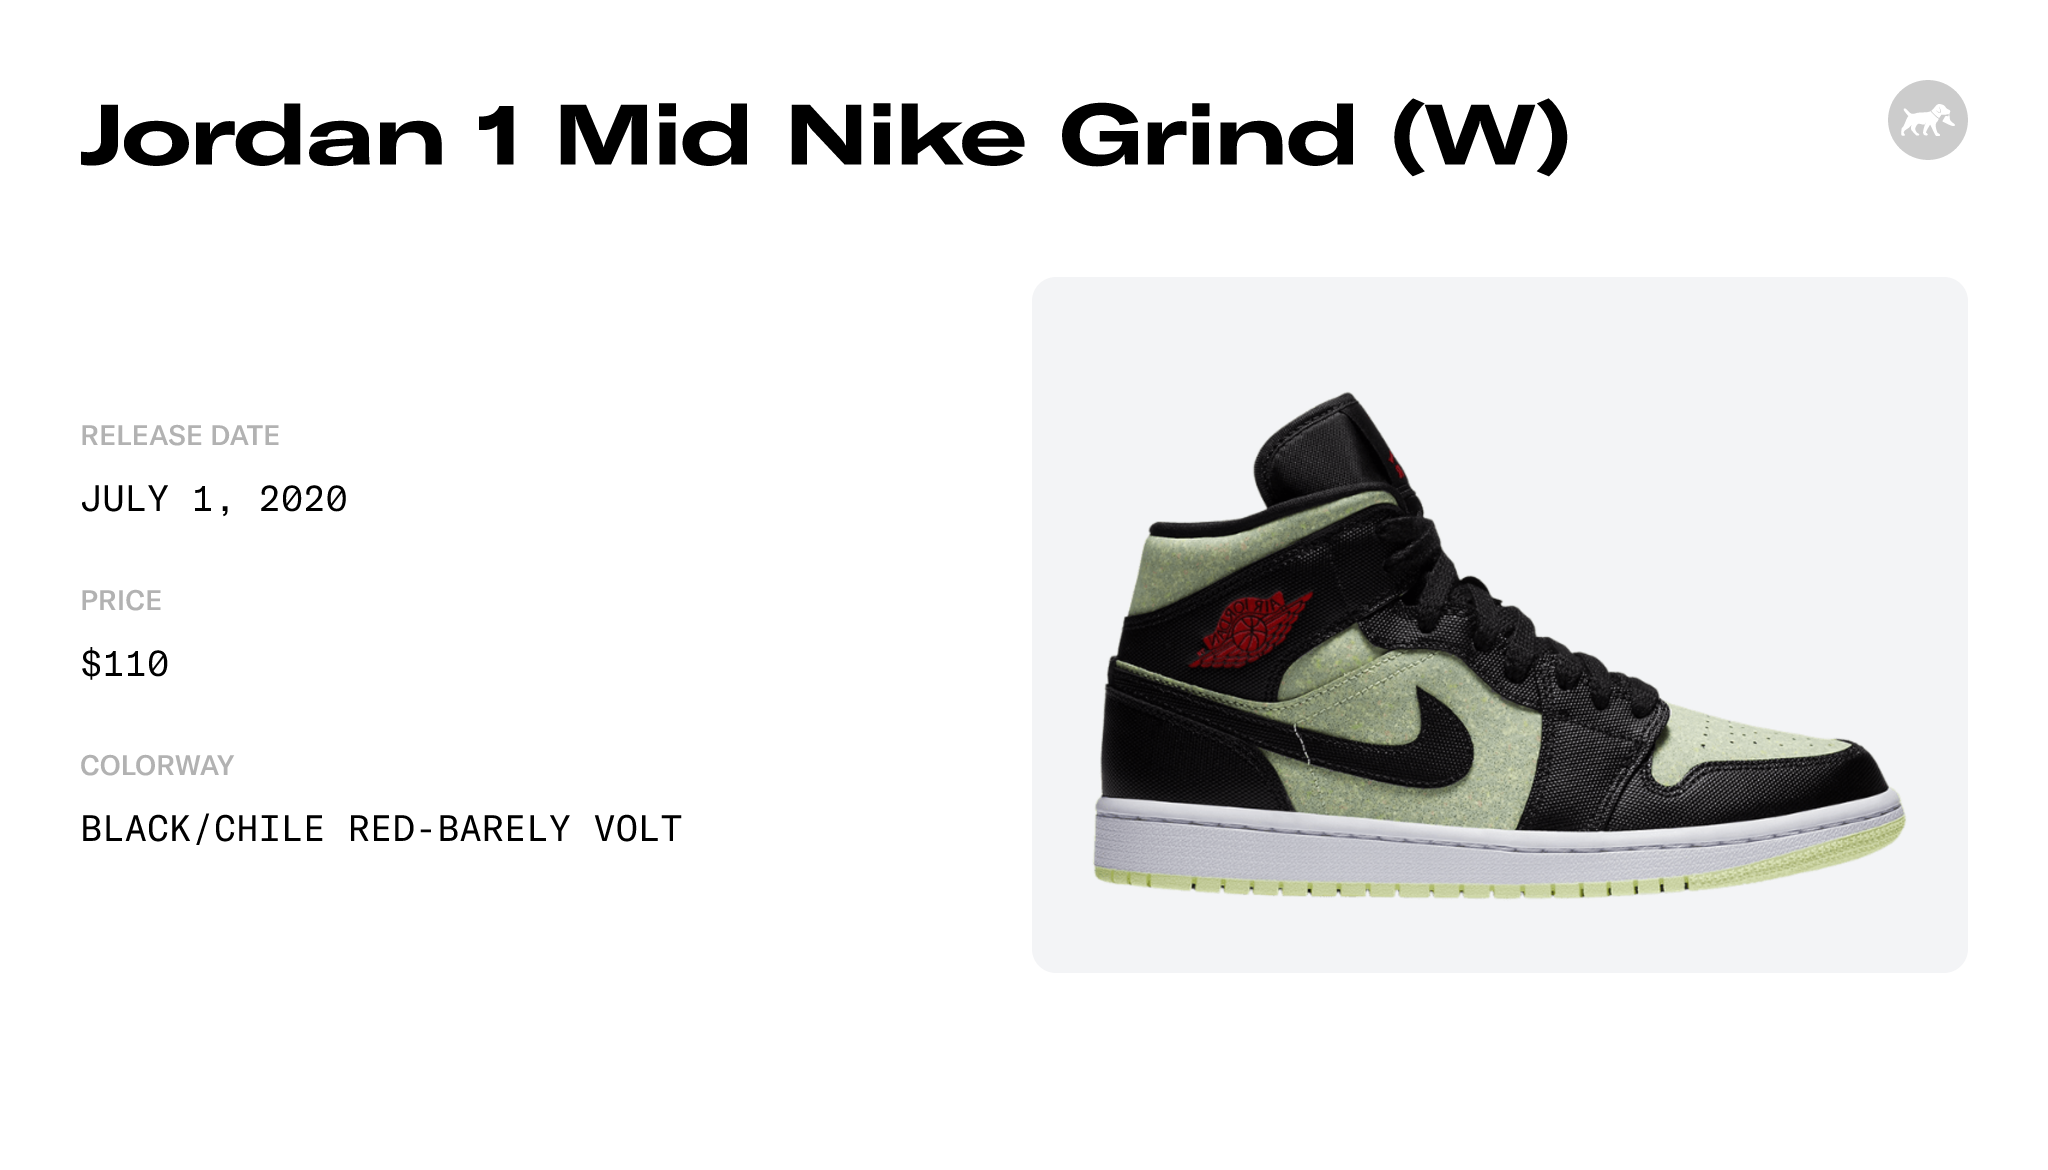 Jordan 1 Mid Nike Grind (W) - CV5276-003 Raffles and Release Date